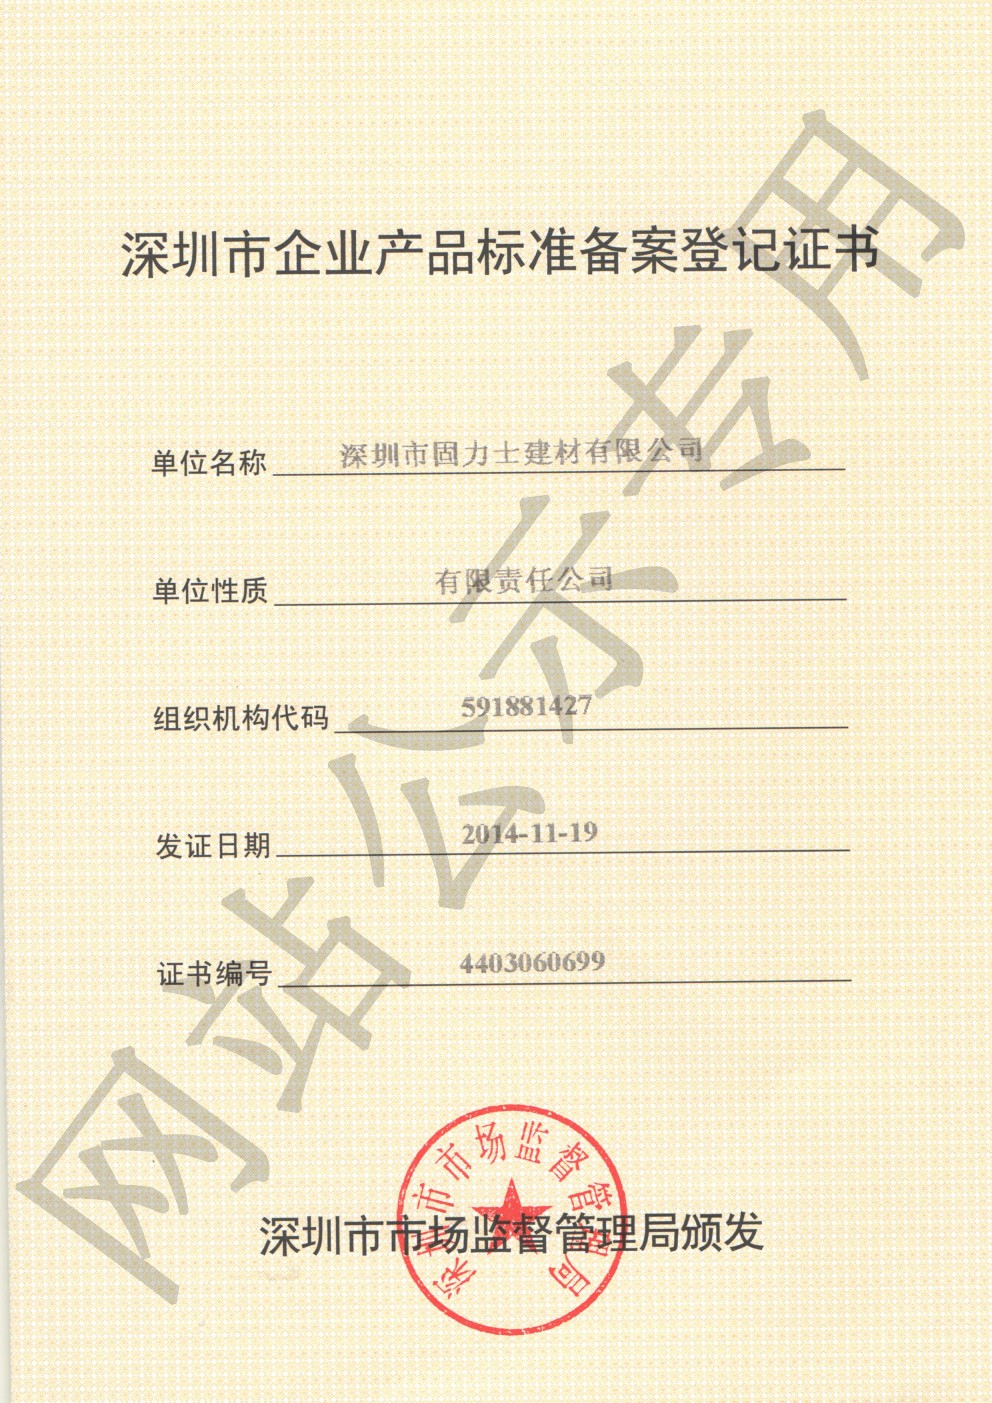 皋兰企业产品标准登记证书